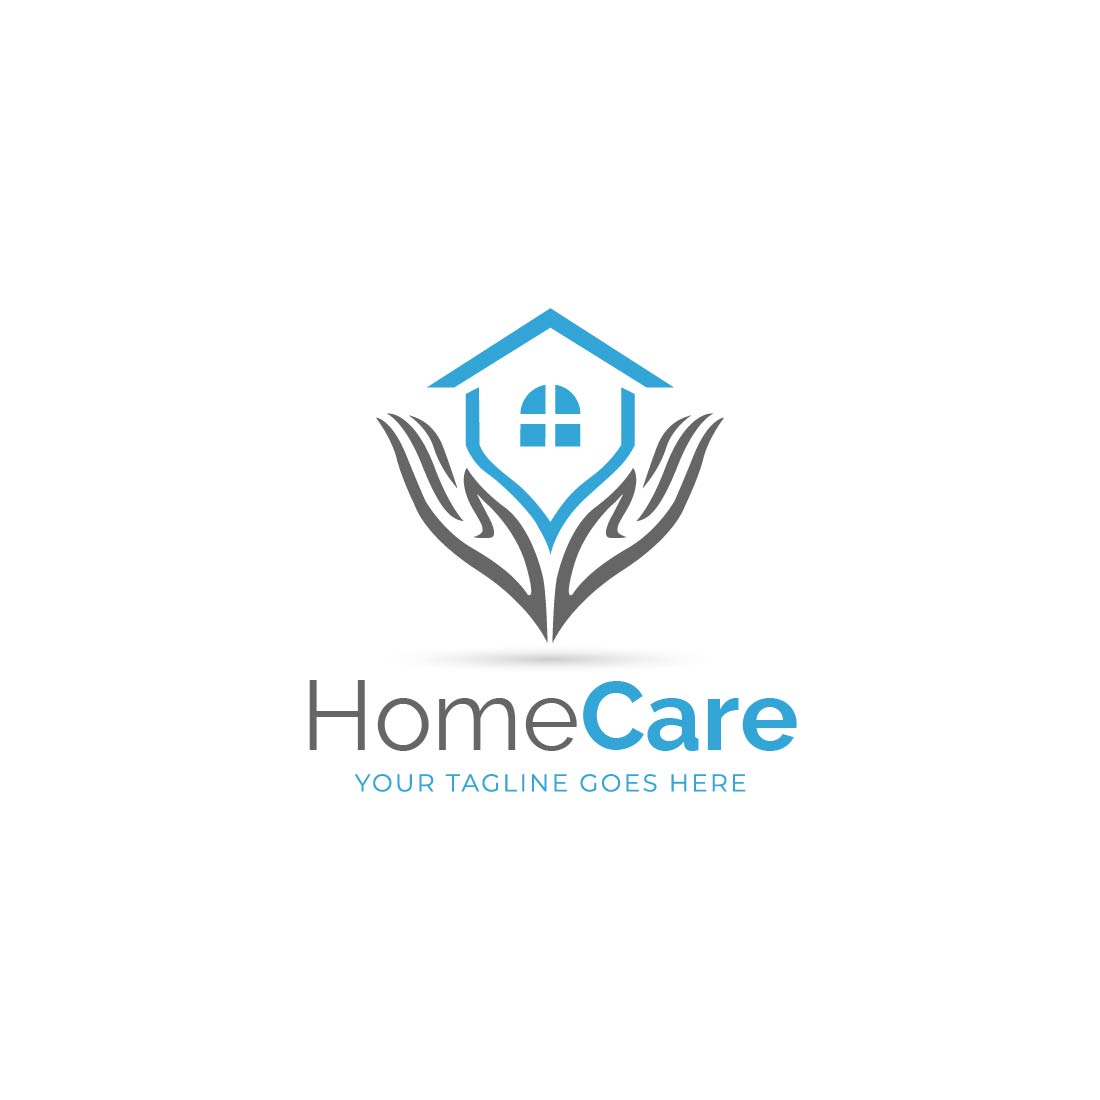 Home Care Logo Design cover image.